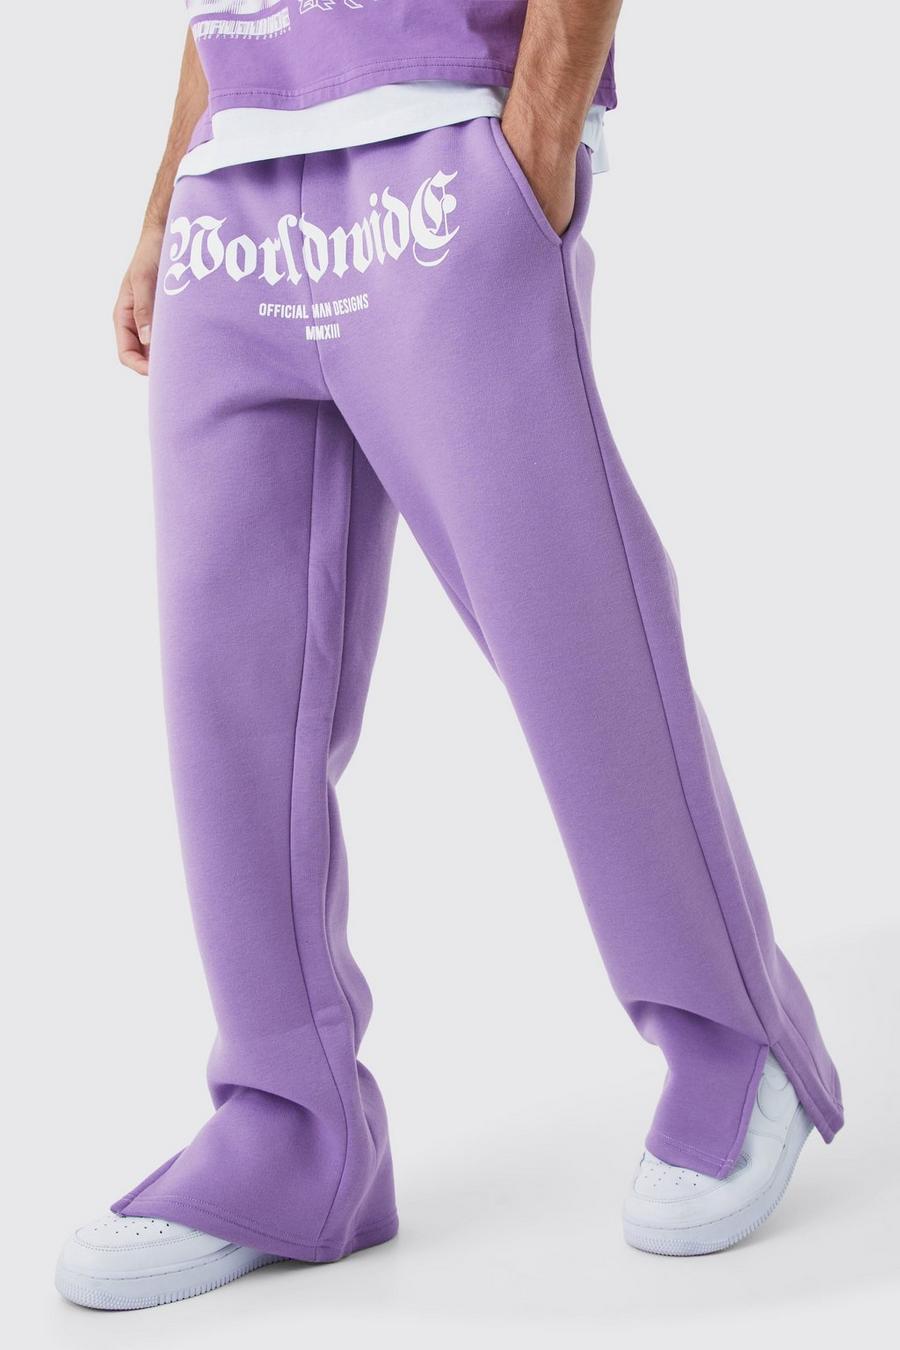 Pantalón deportivo con abertura en el bajo y estampado Worldwide en la entrepierna, Lilac